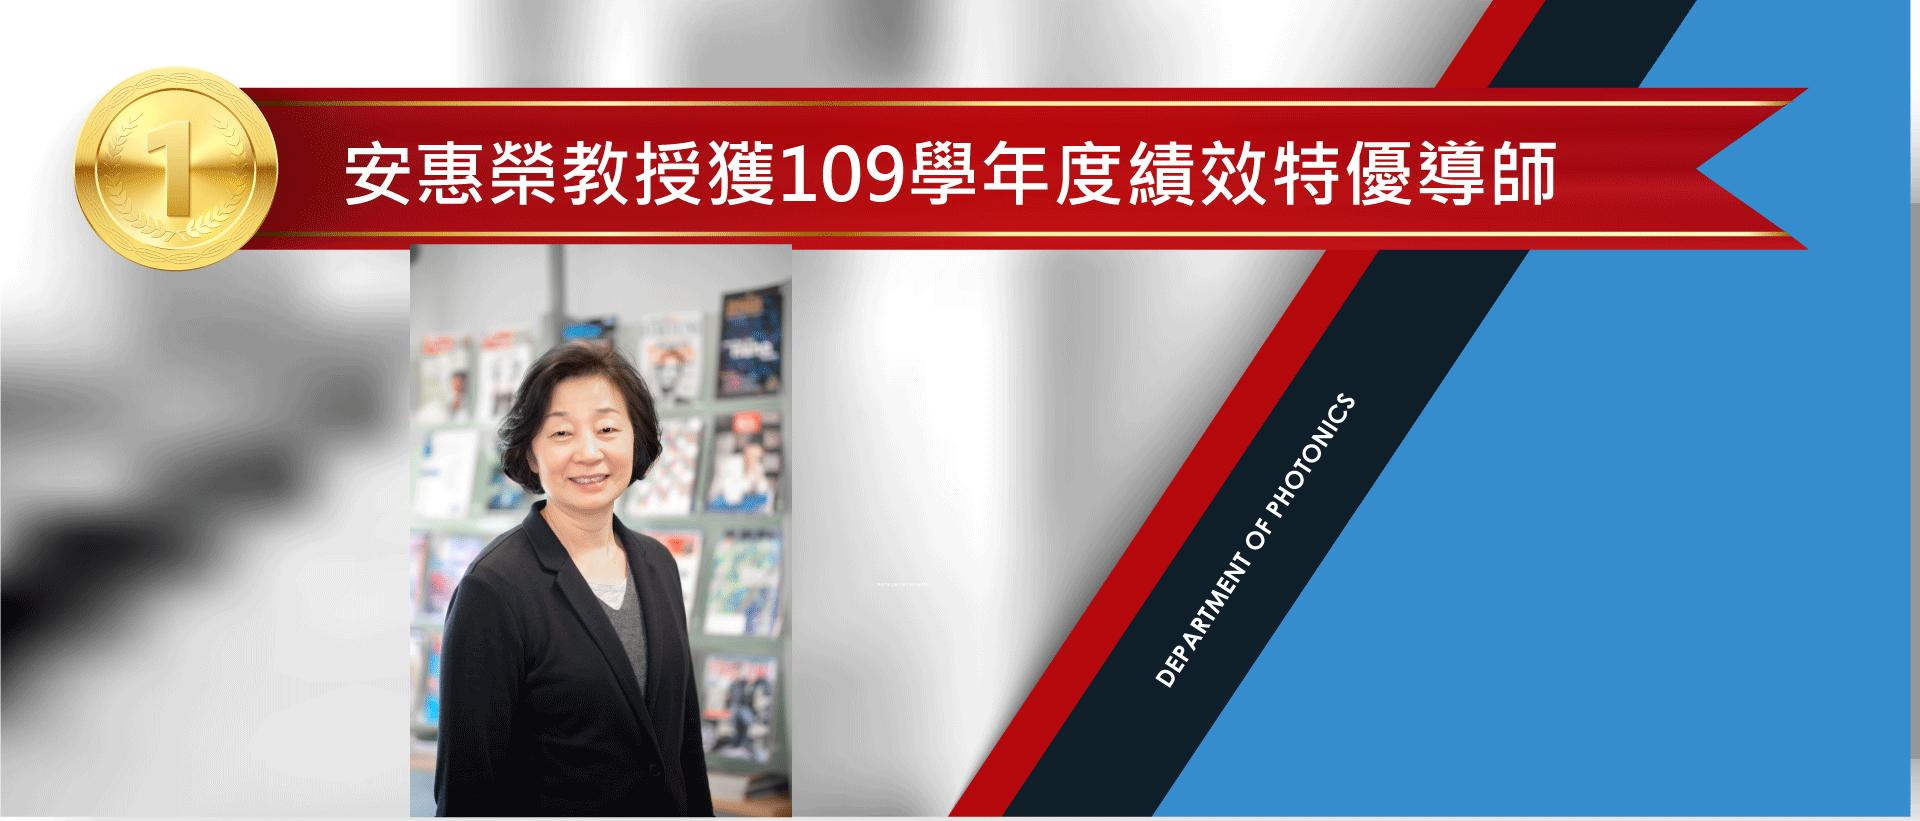 賀!!本系安惠榮老師獲109學年度校級績效特優導師